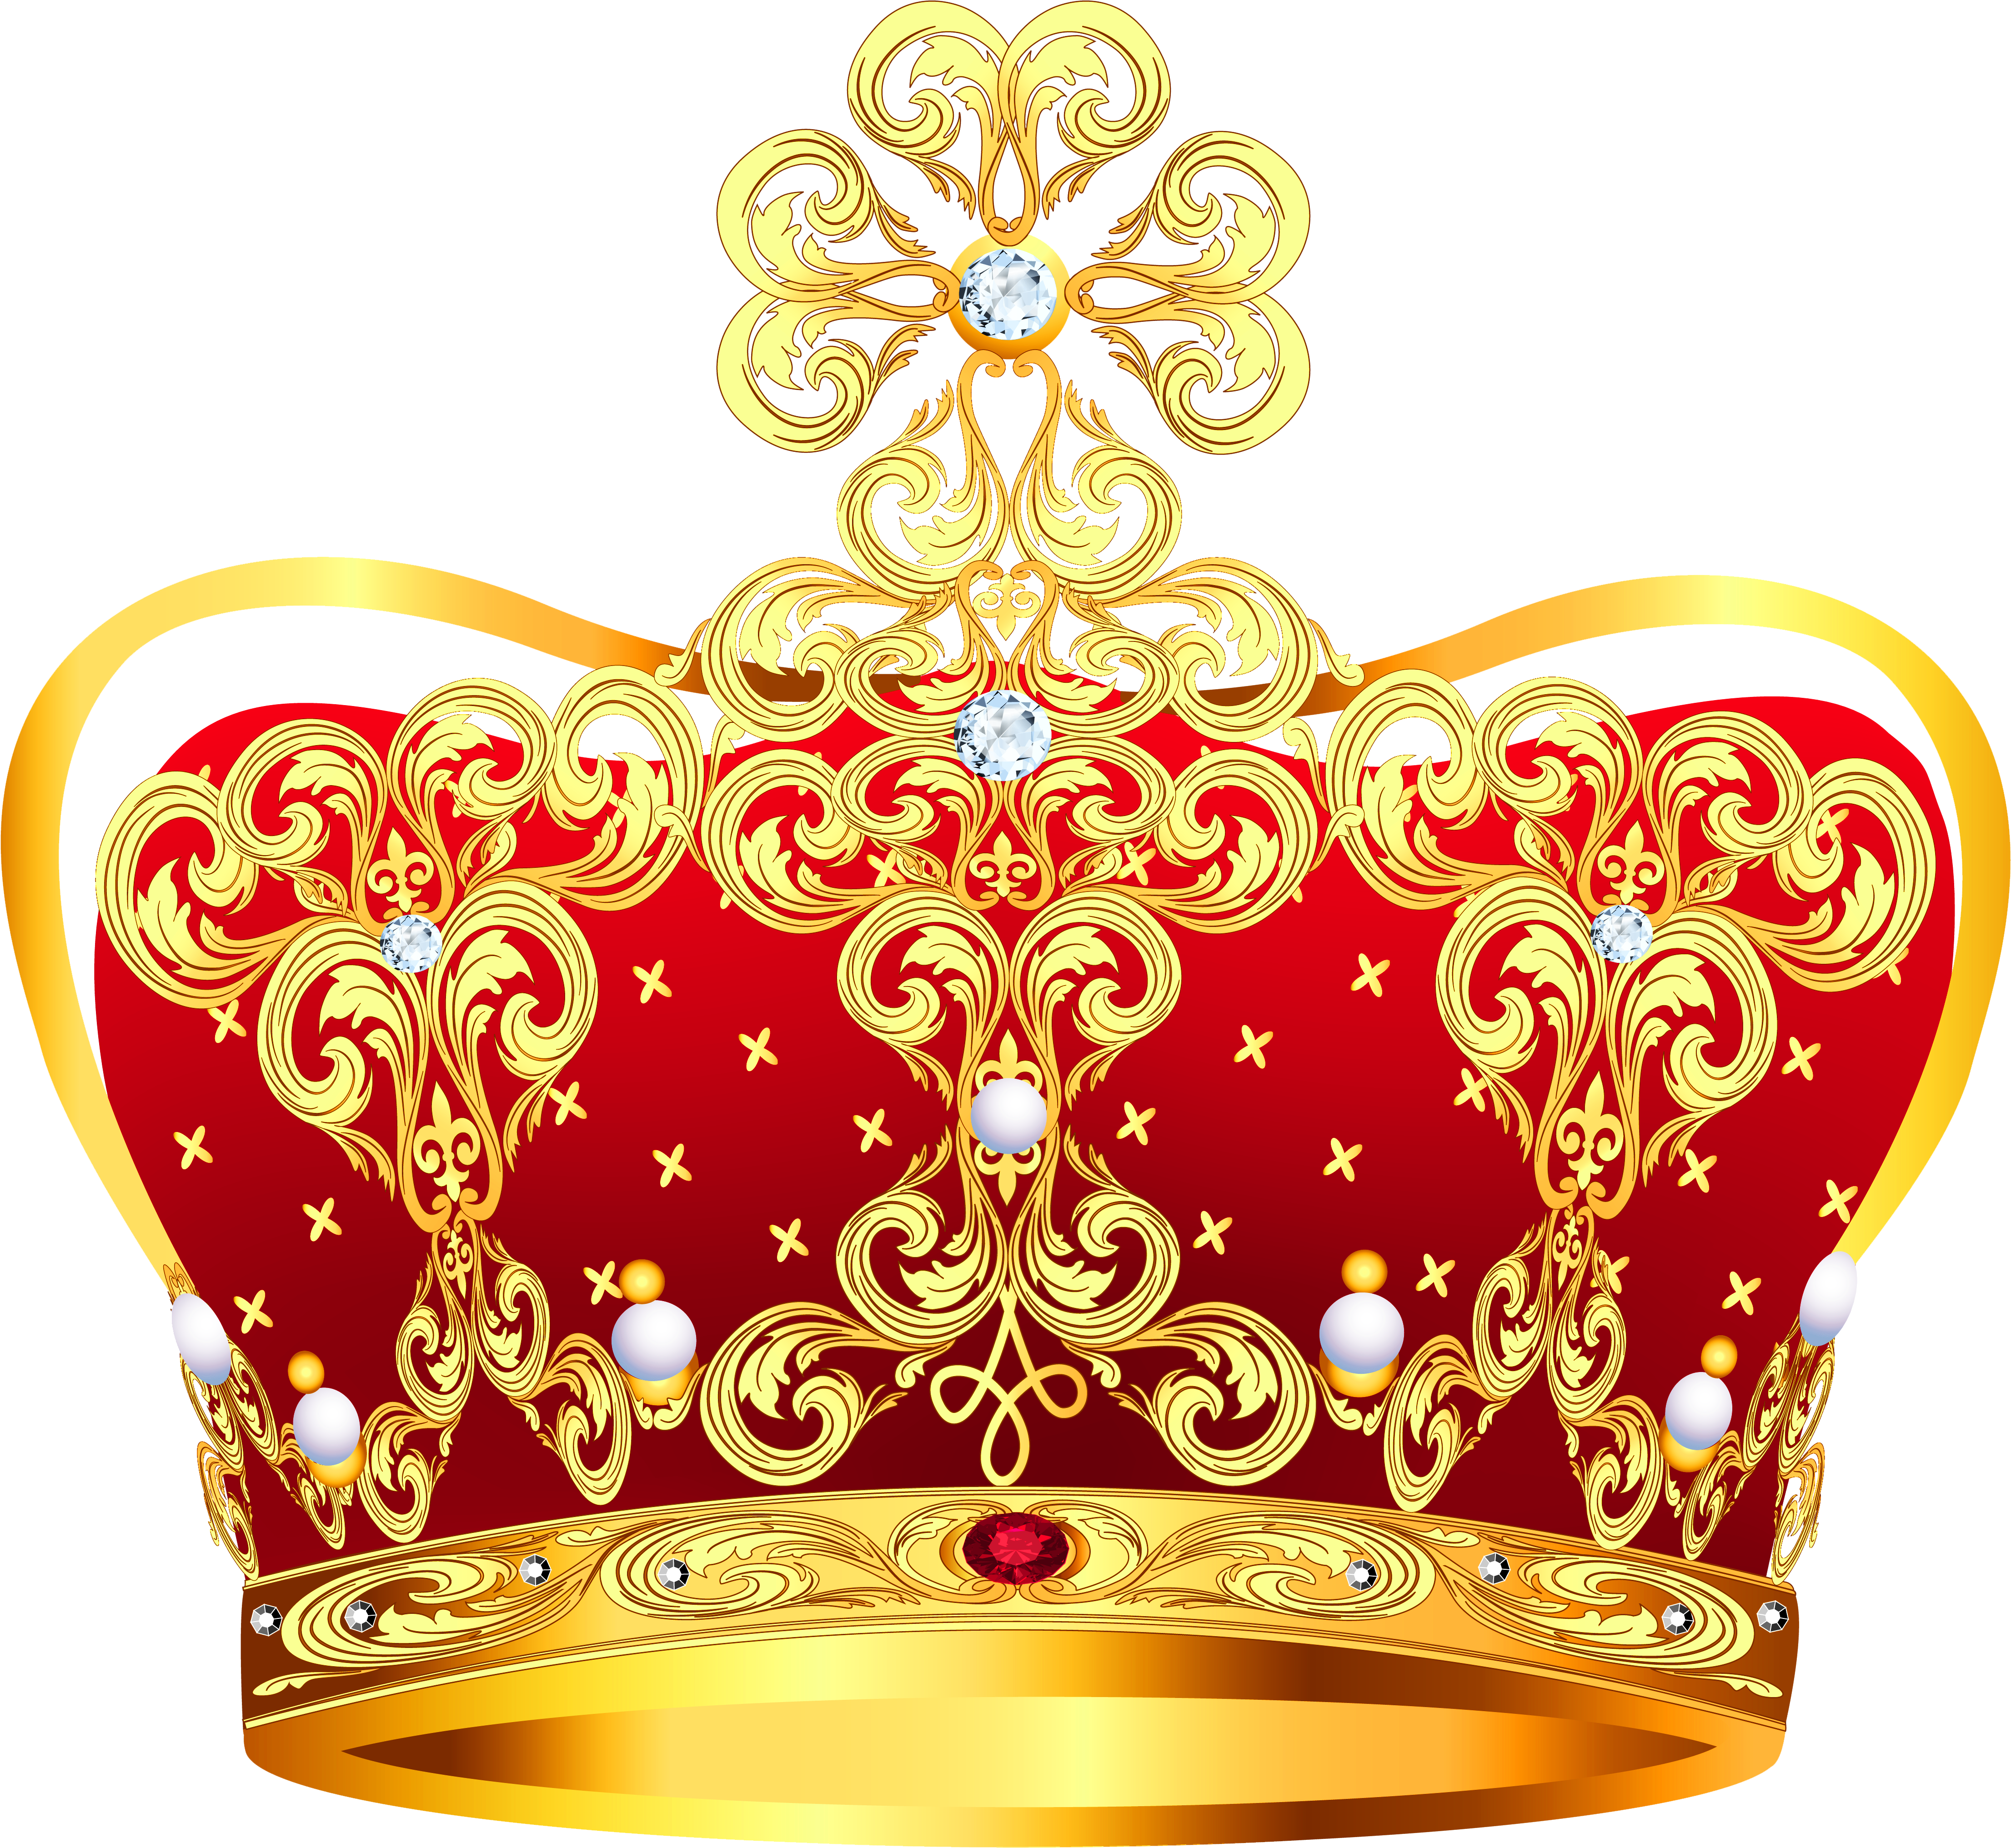 Заголовок: Queen Crown Golden PNG Image PNG Размер изображения: 4423x4065 Р...